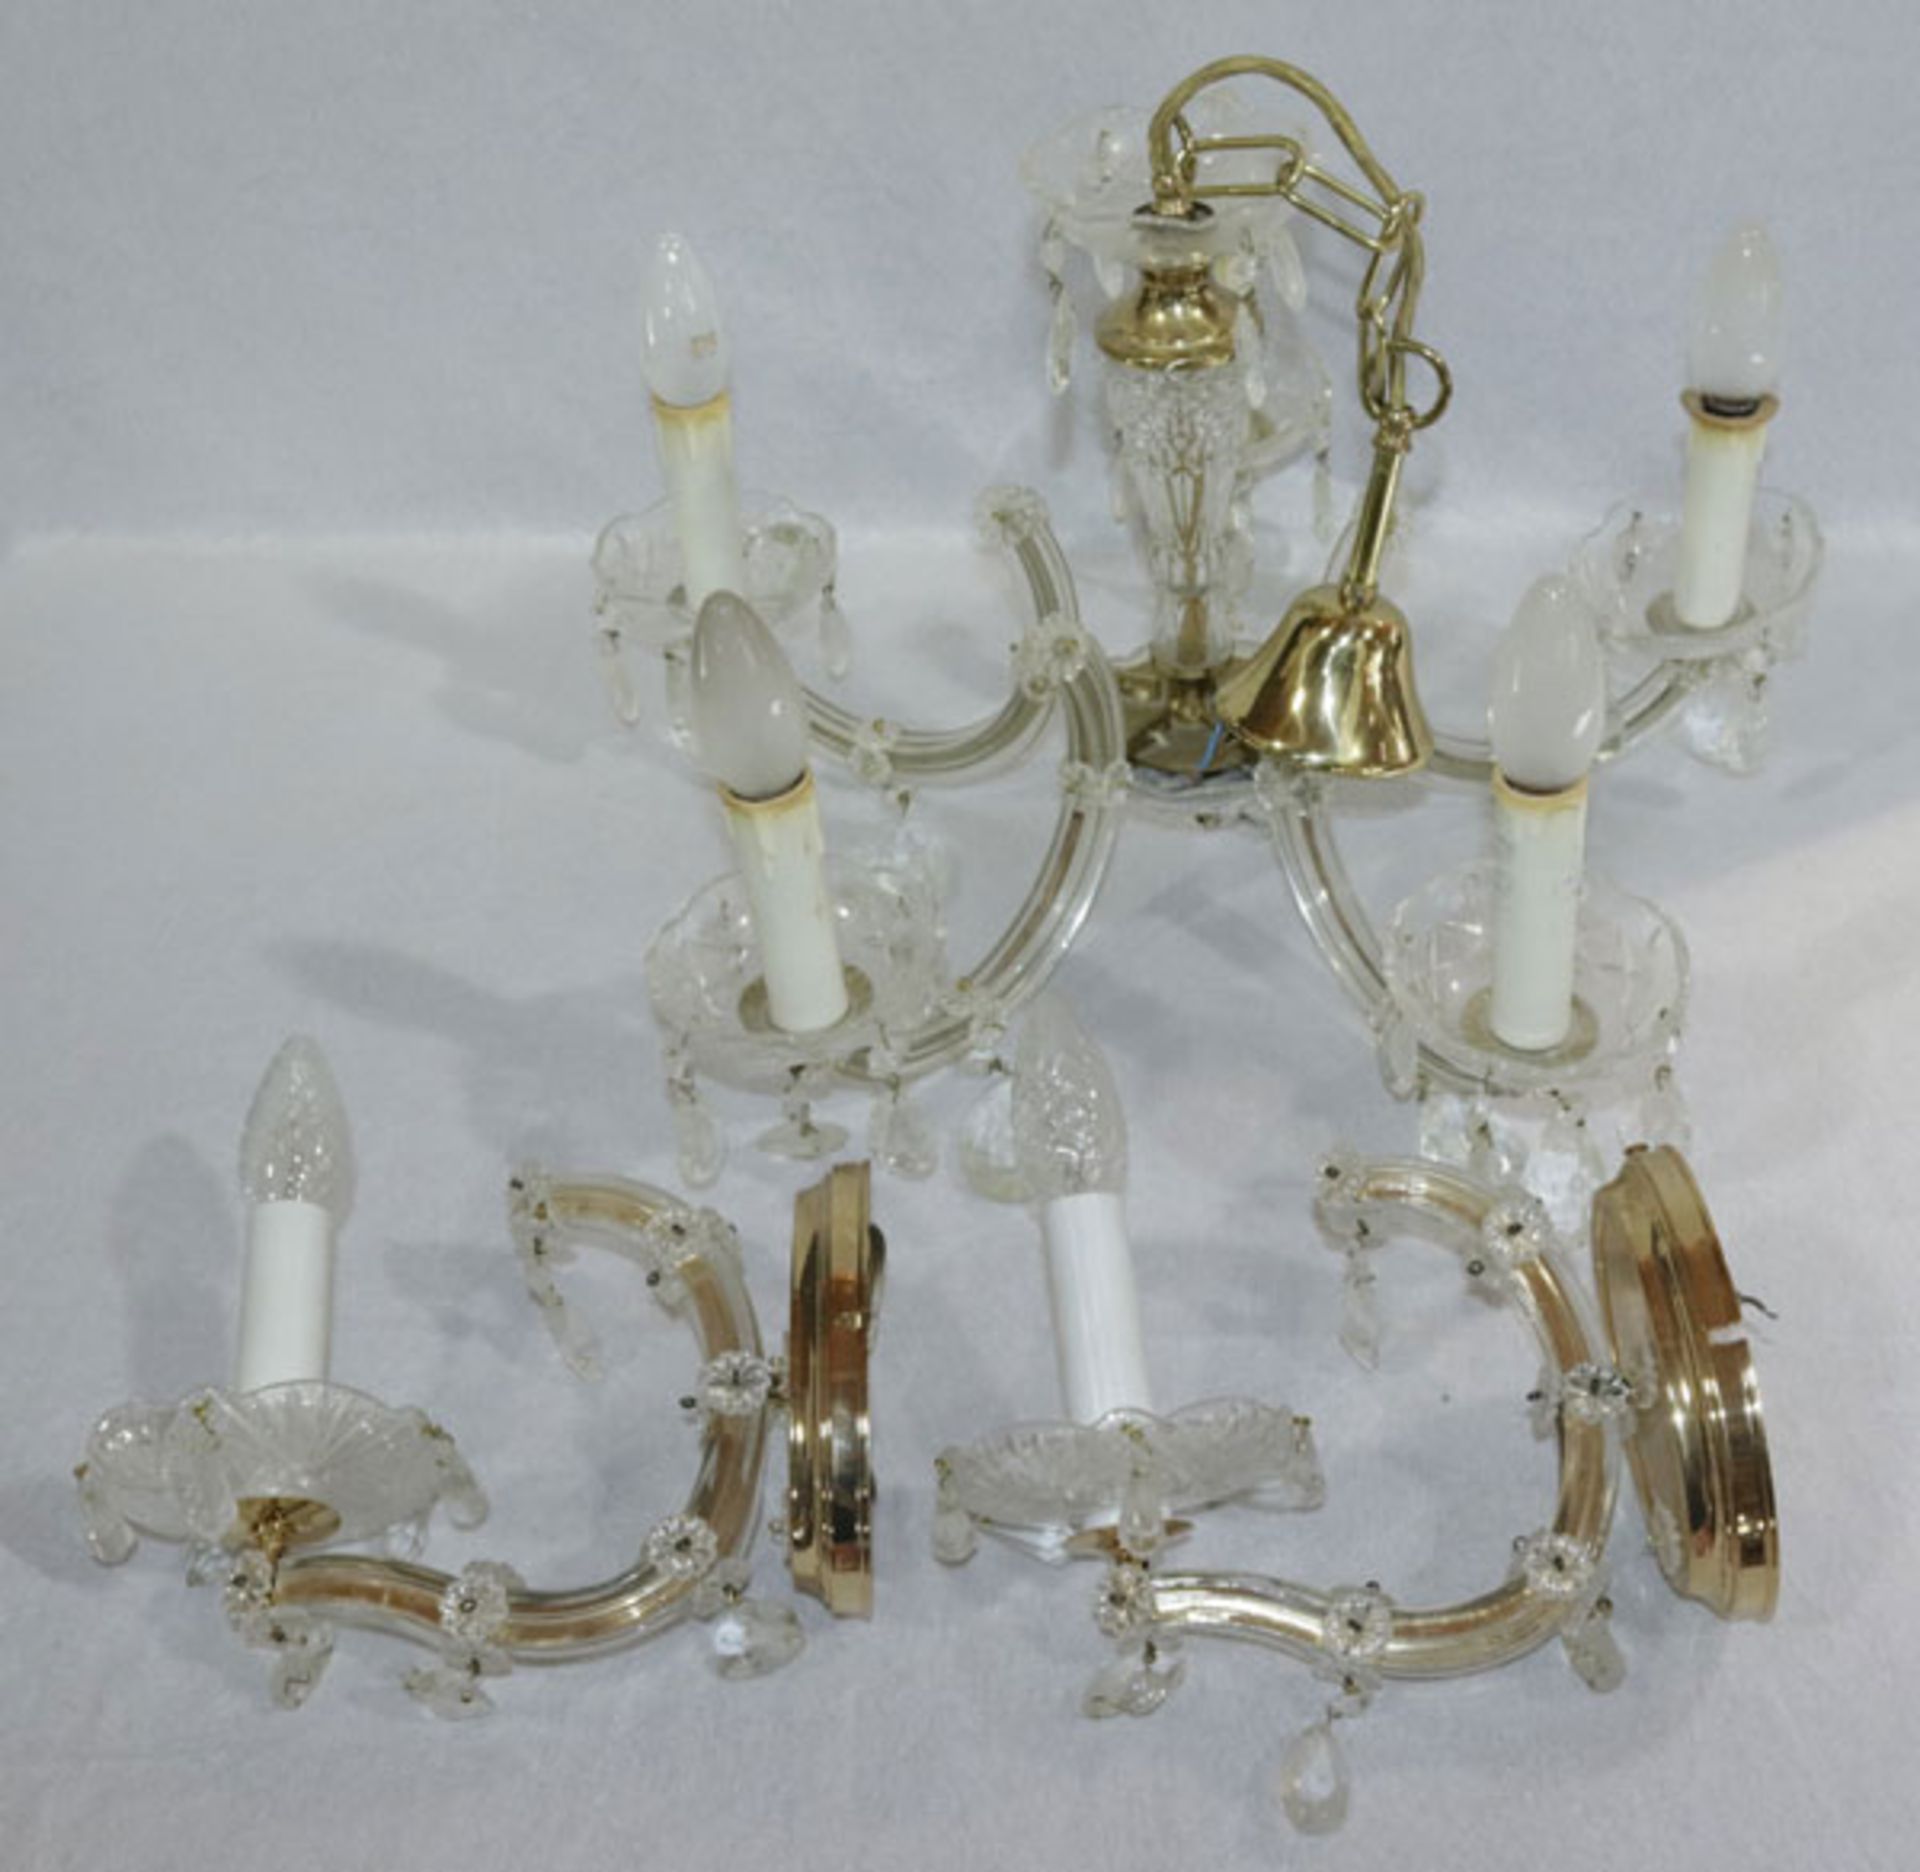 Hängelampe, 5-armig mit Glasprismen, H 66 cm, D 52 cm, und Paar Wandlampen, einarmig mit Glasprismen